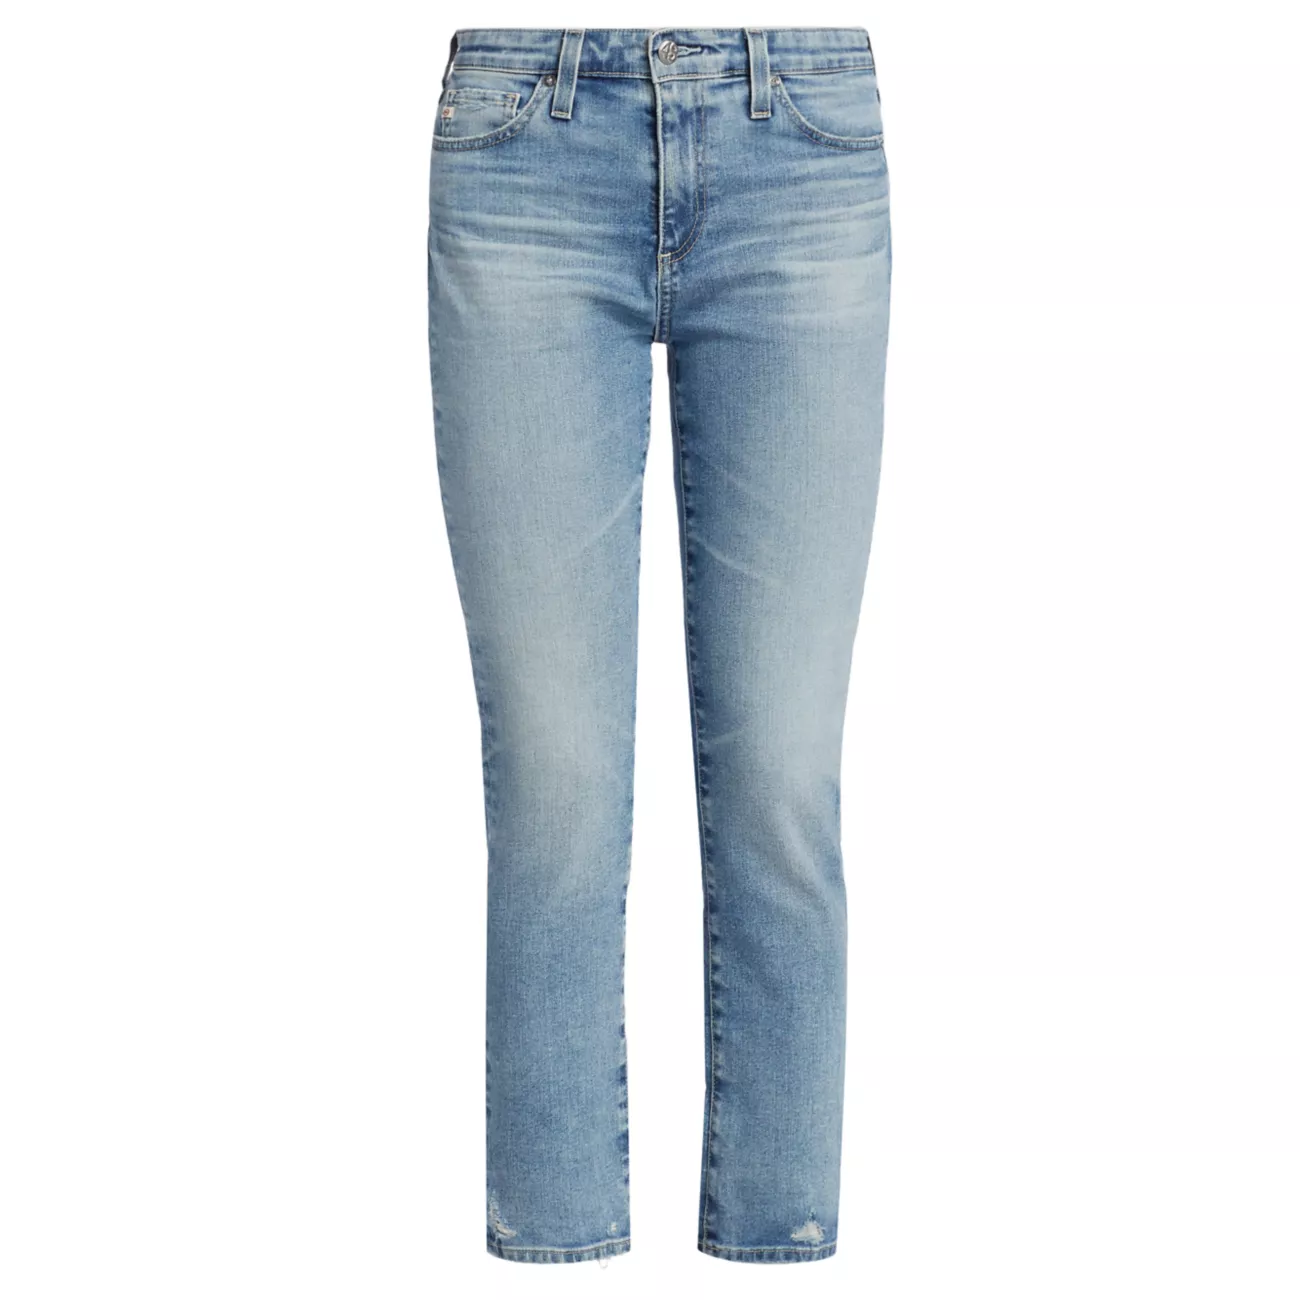 Укороченные джинсы-стрейч Mari со средней посадкой AG Jeans